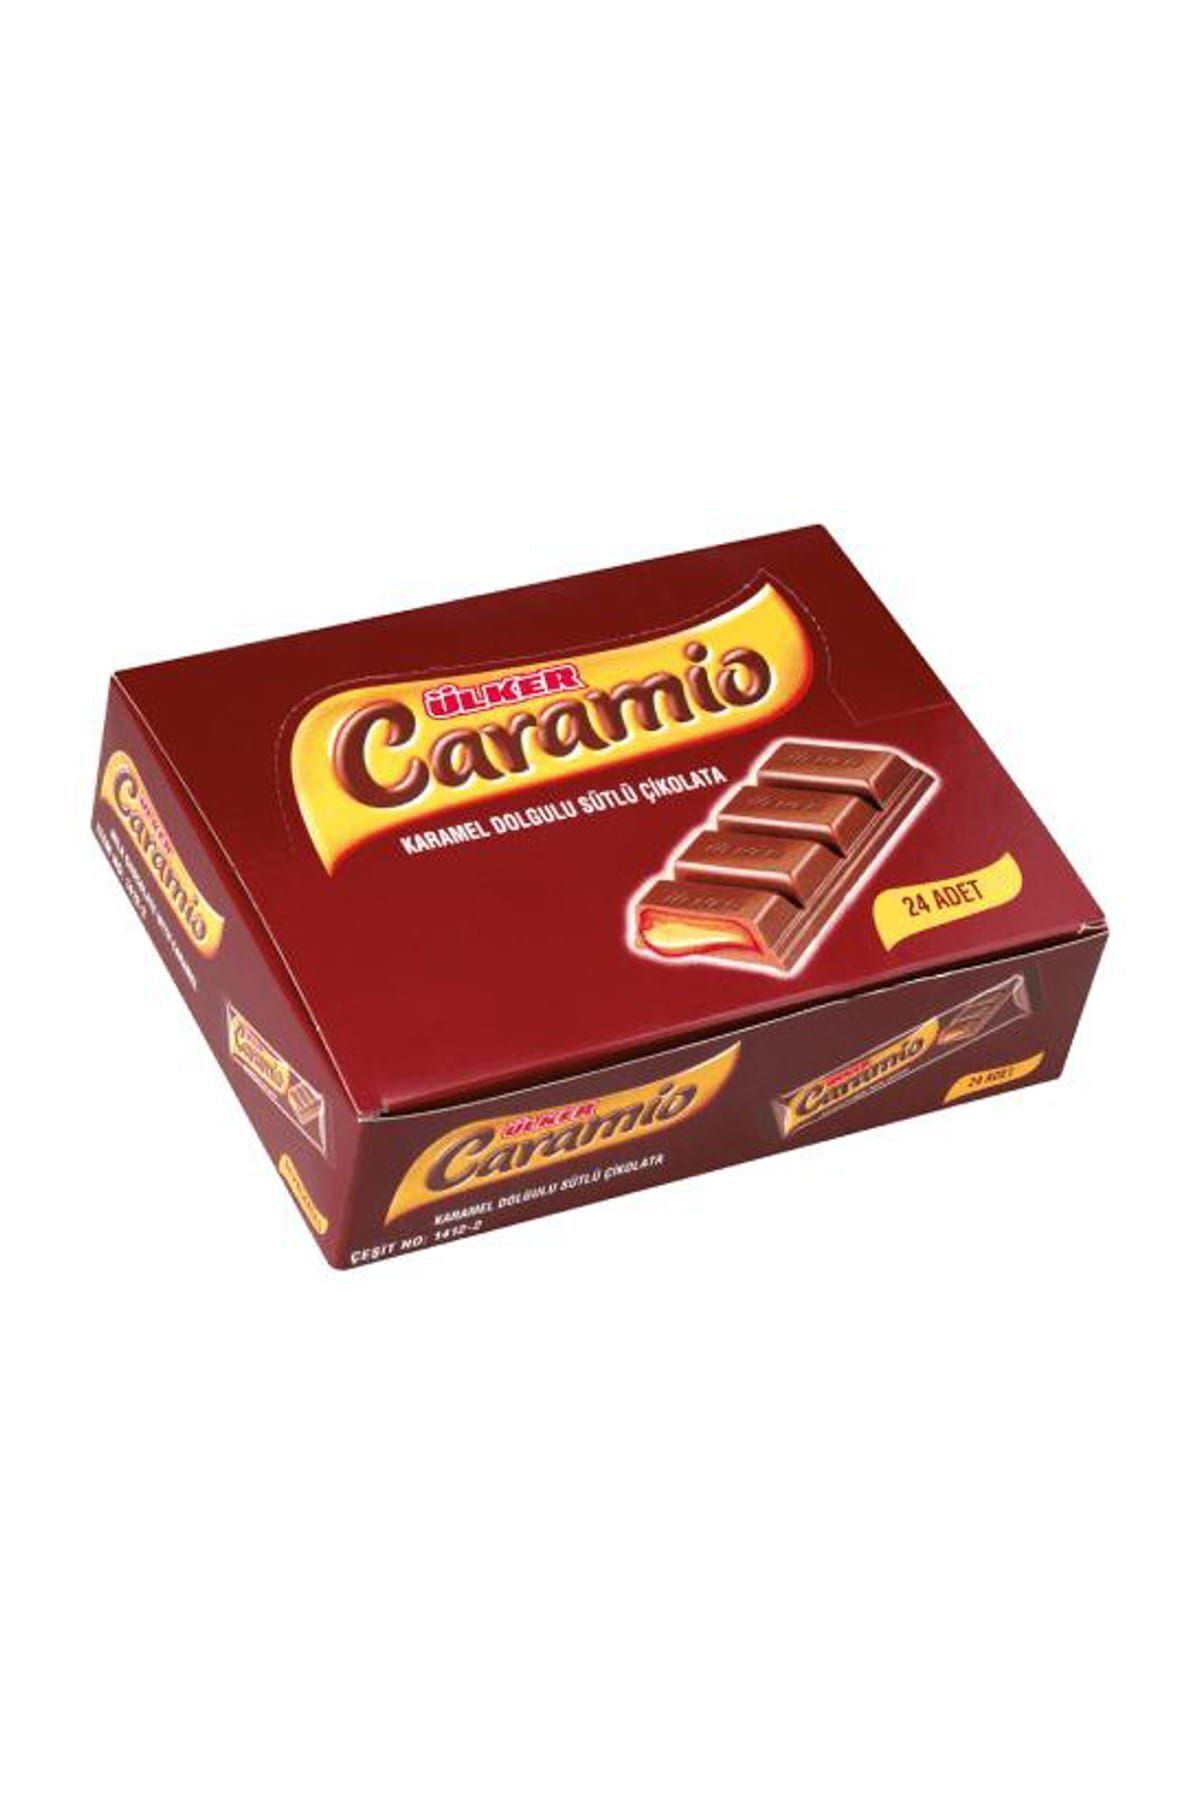 Ülker Caramio Çikolata 7 gr (24 Adet)